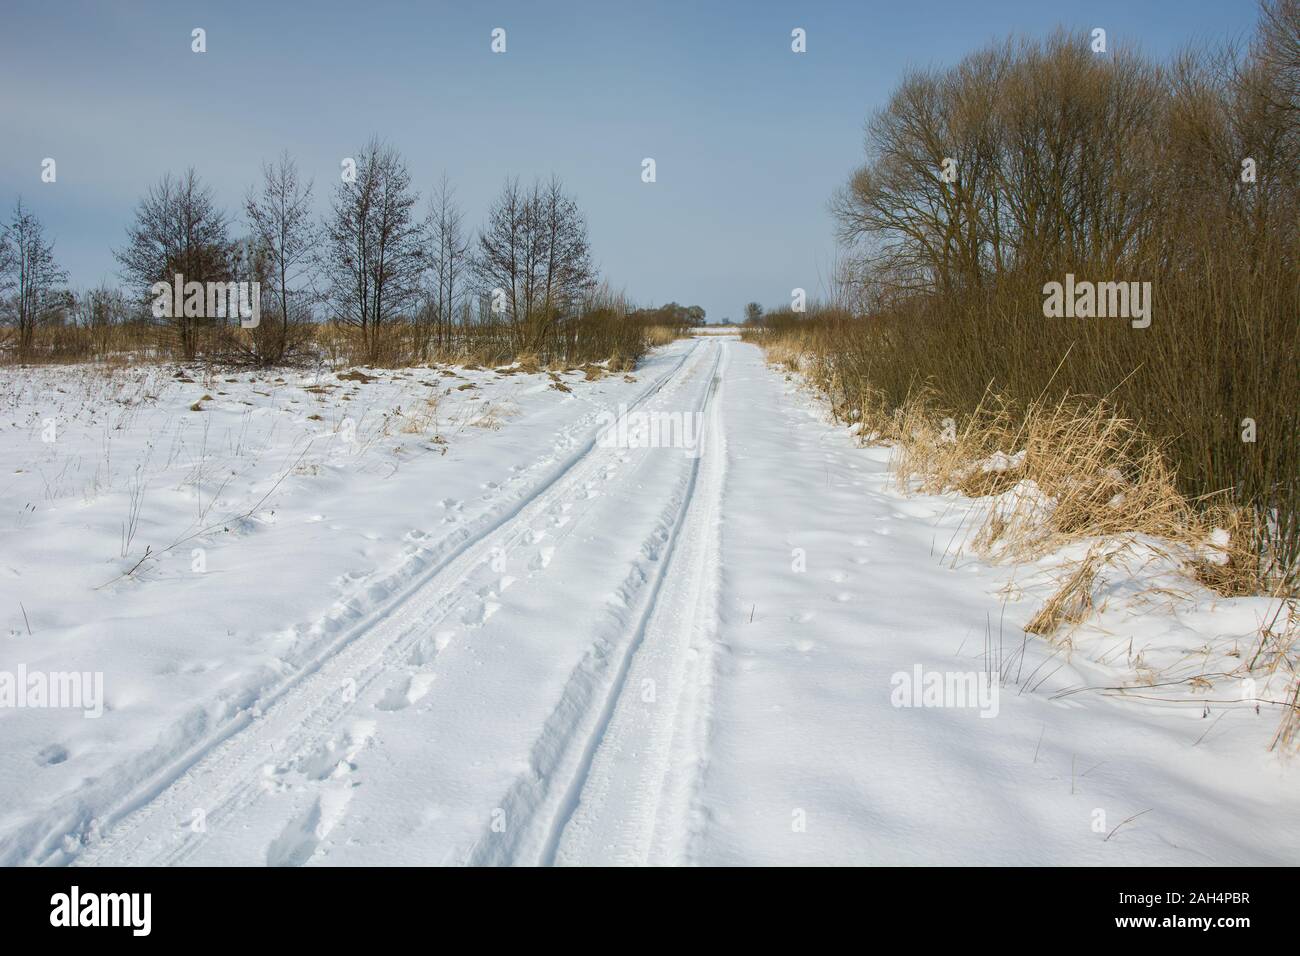 Une longue route enneigée, journée ensoleillée d'hiver Banque D'Images